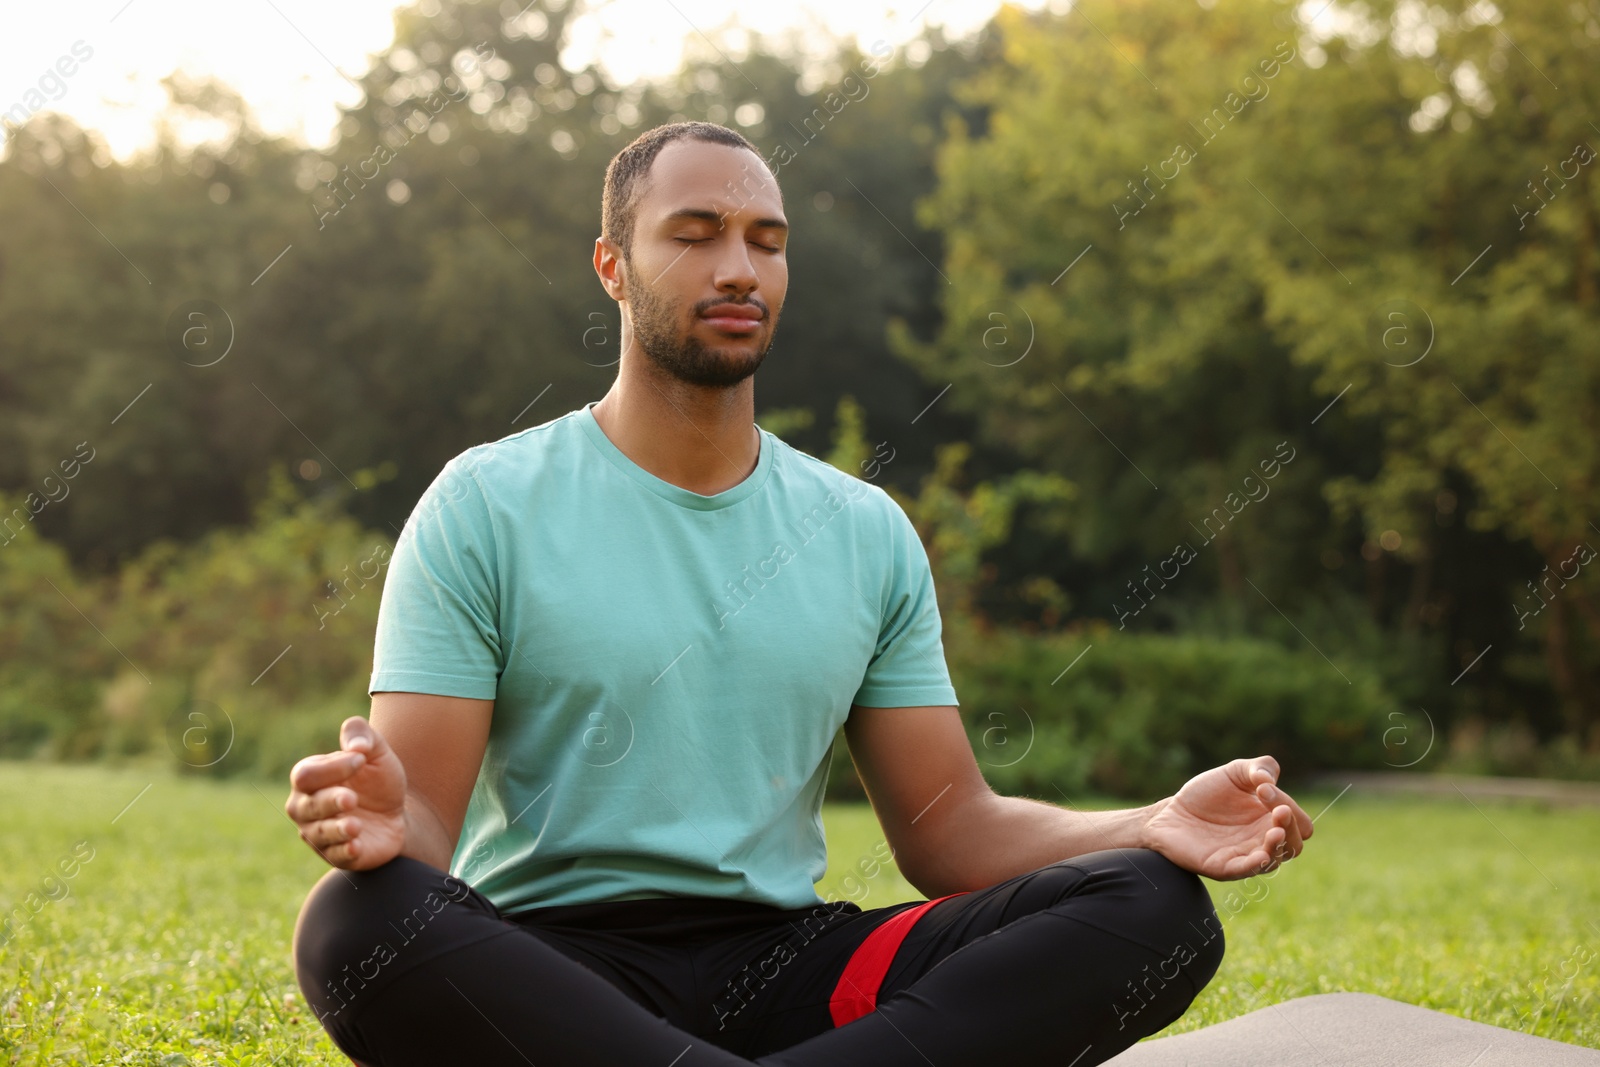 Photo of Man practicing yoga on mat outdoors. Lotus pose